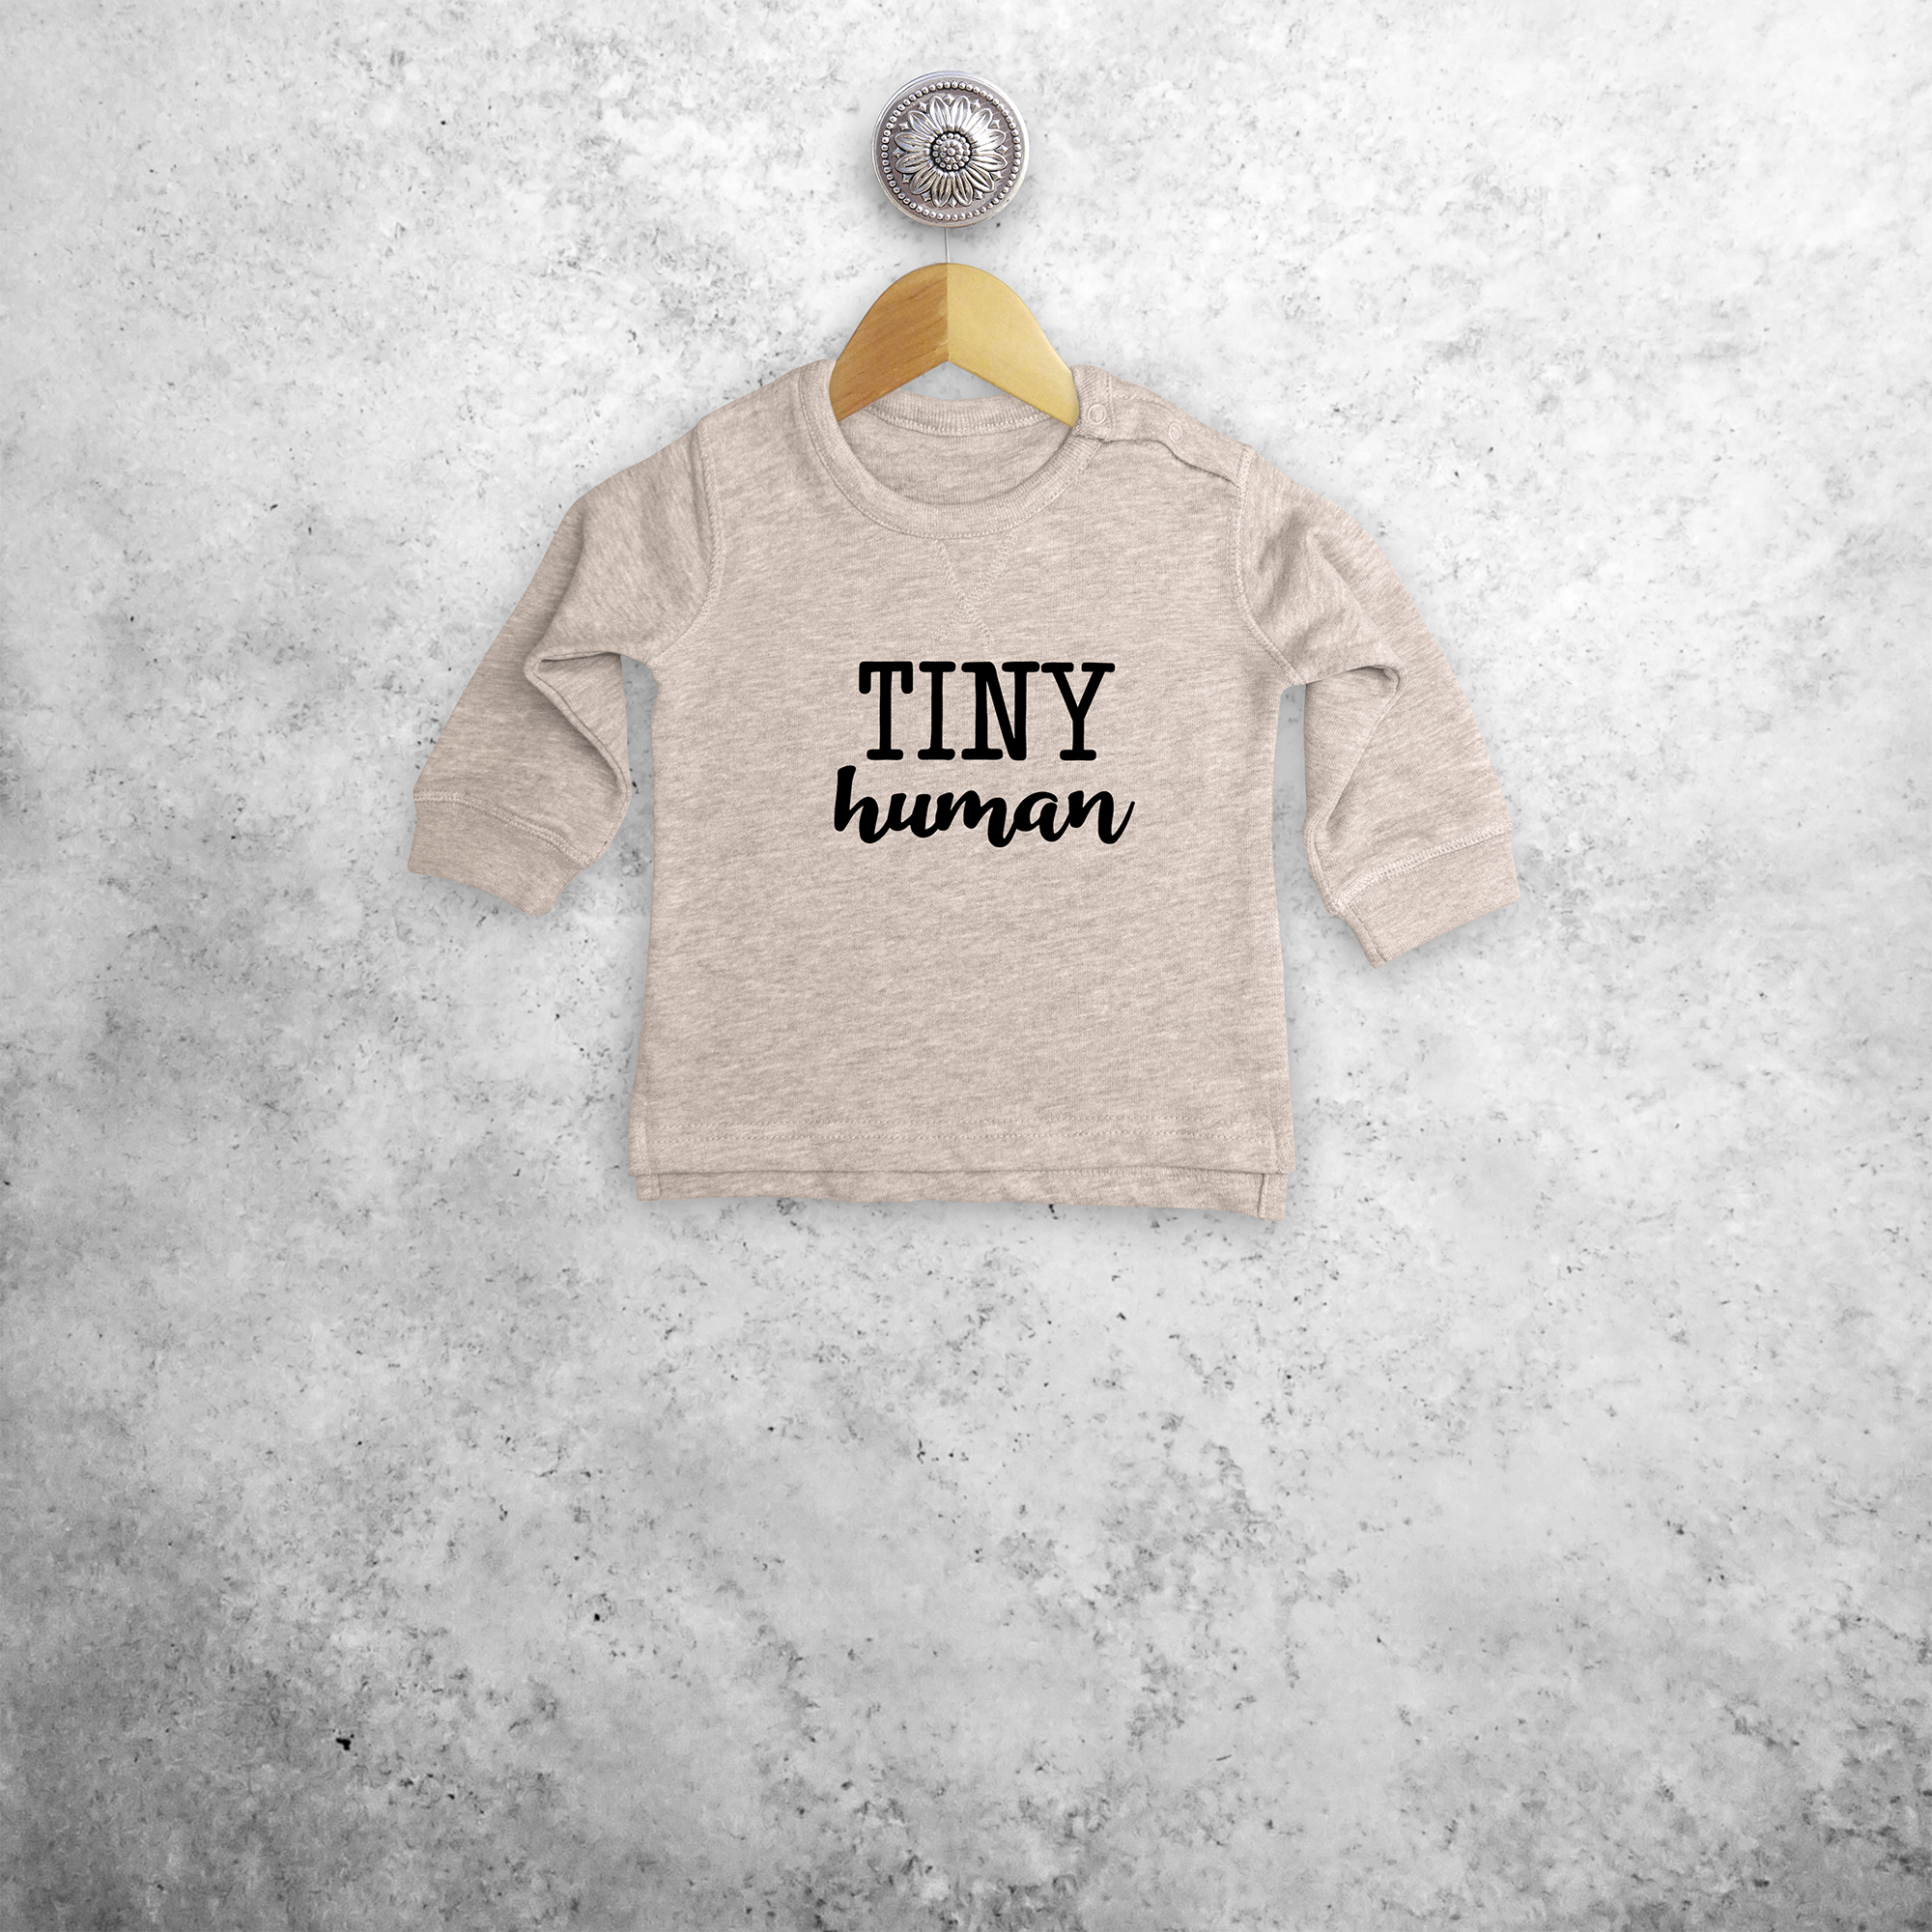 'Tiny human' baby sweater